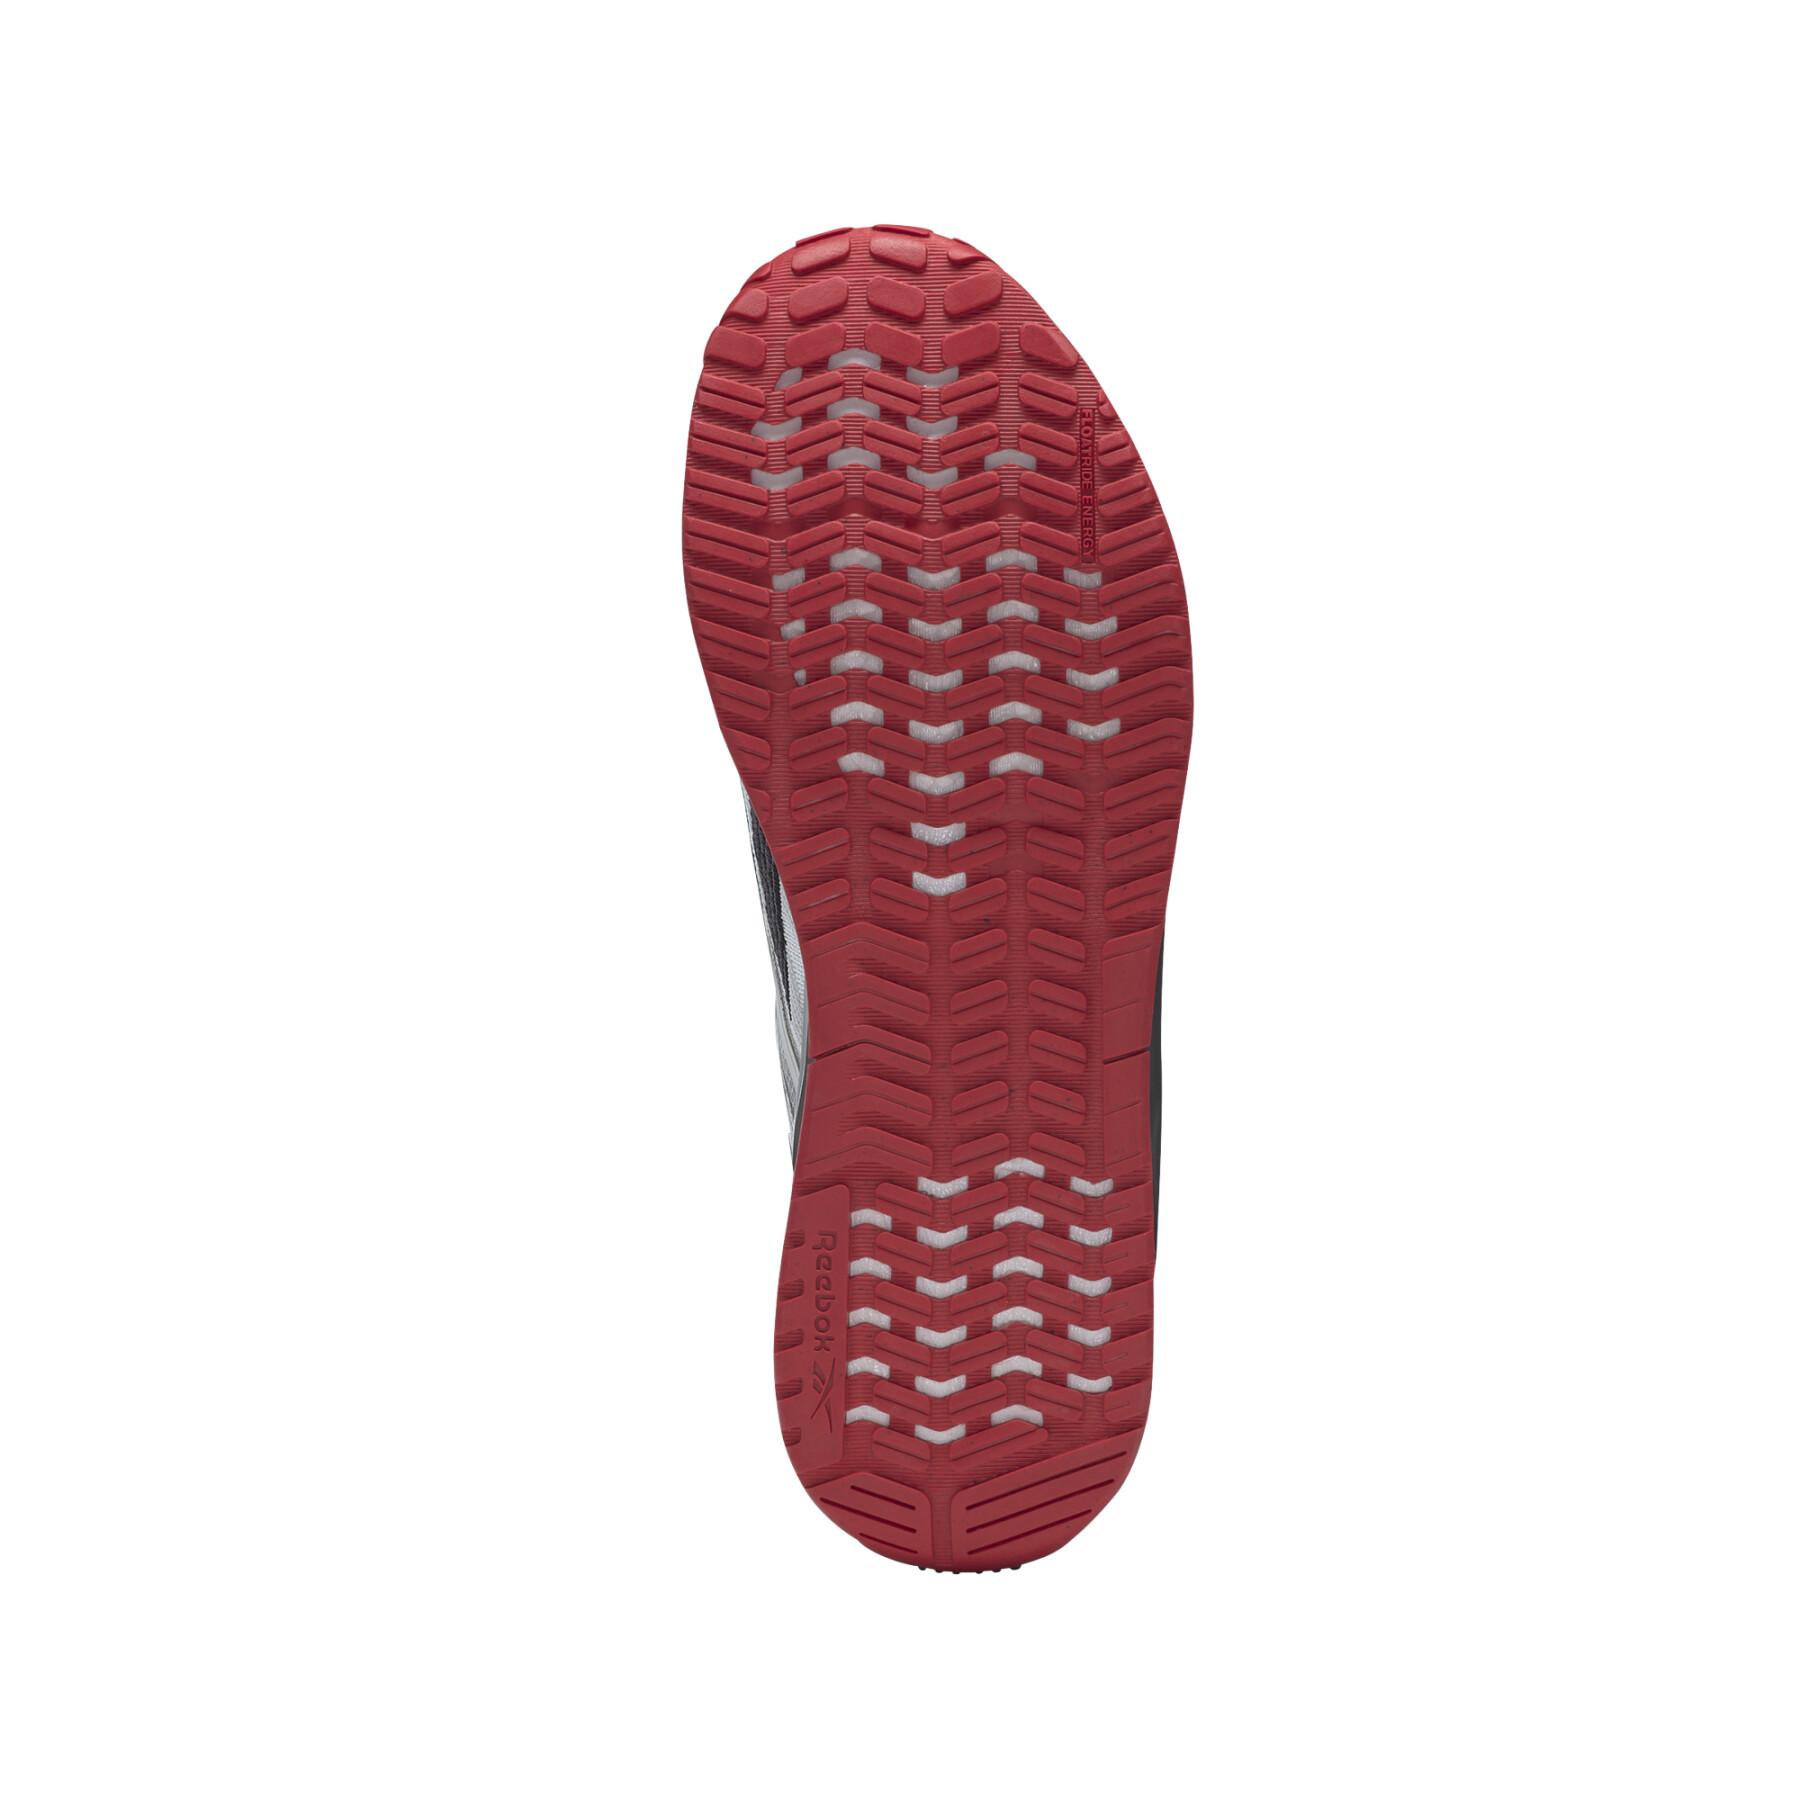 Schuhe Reebok Nano X2